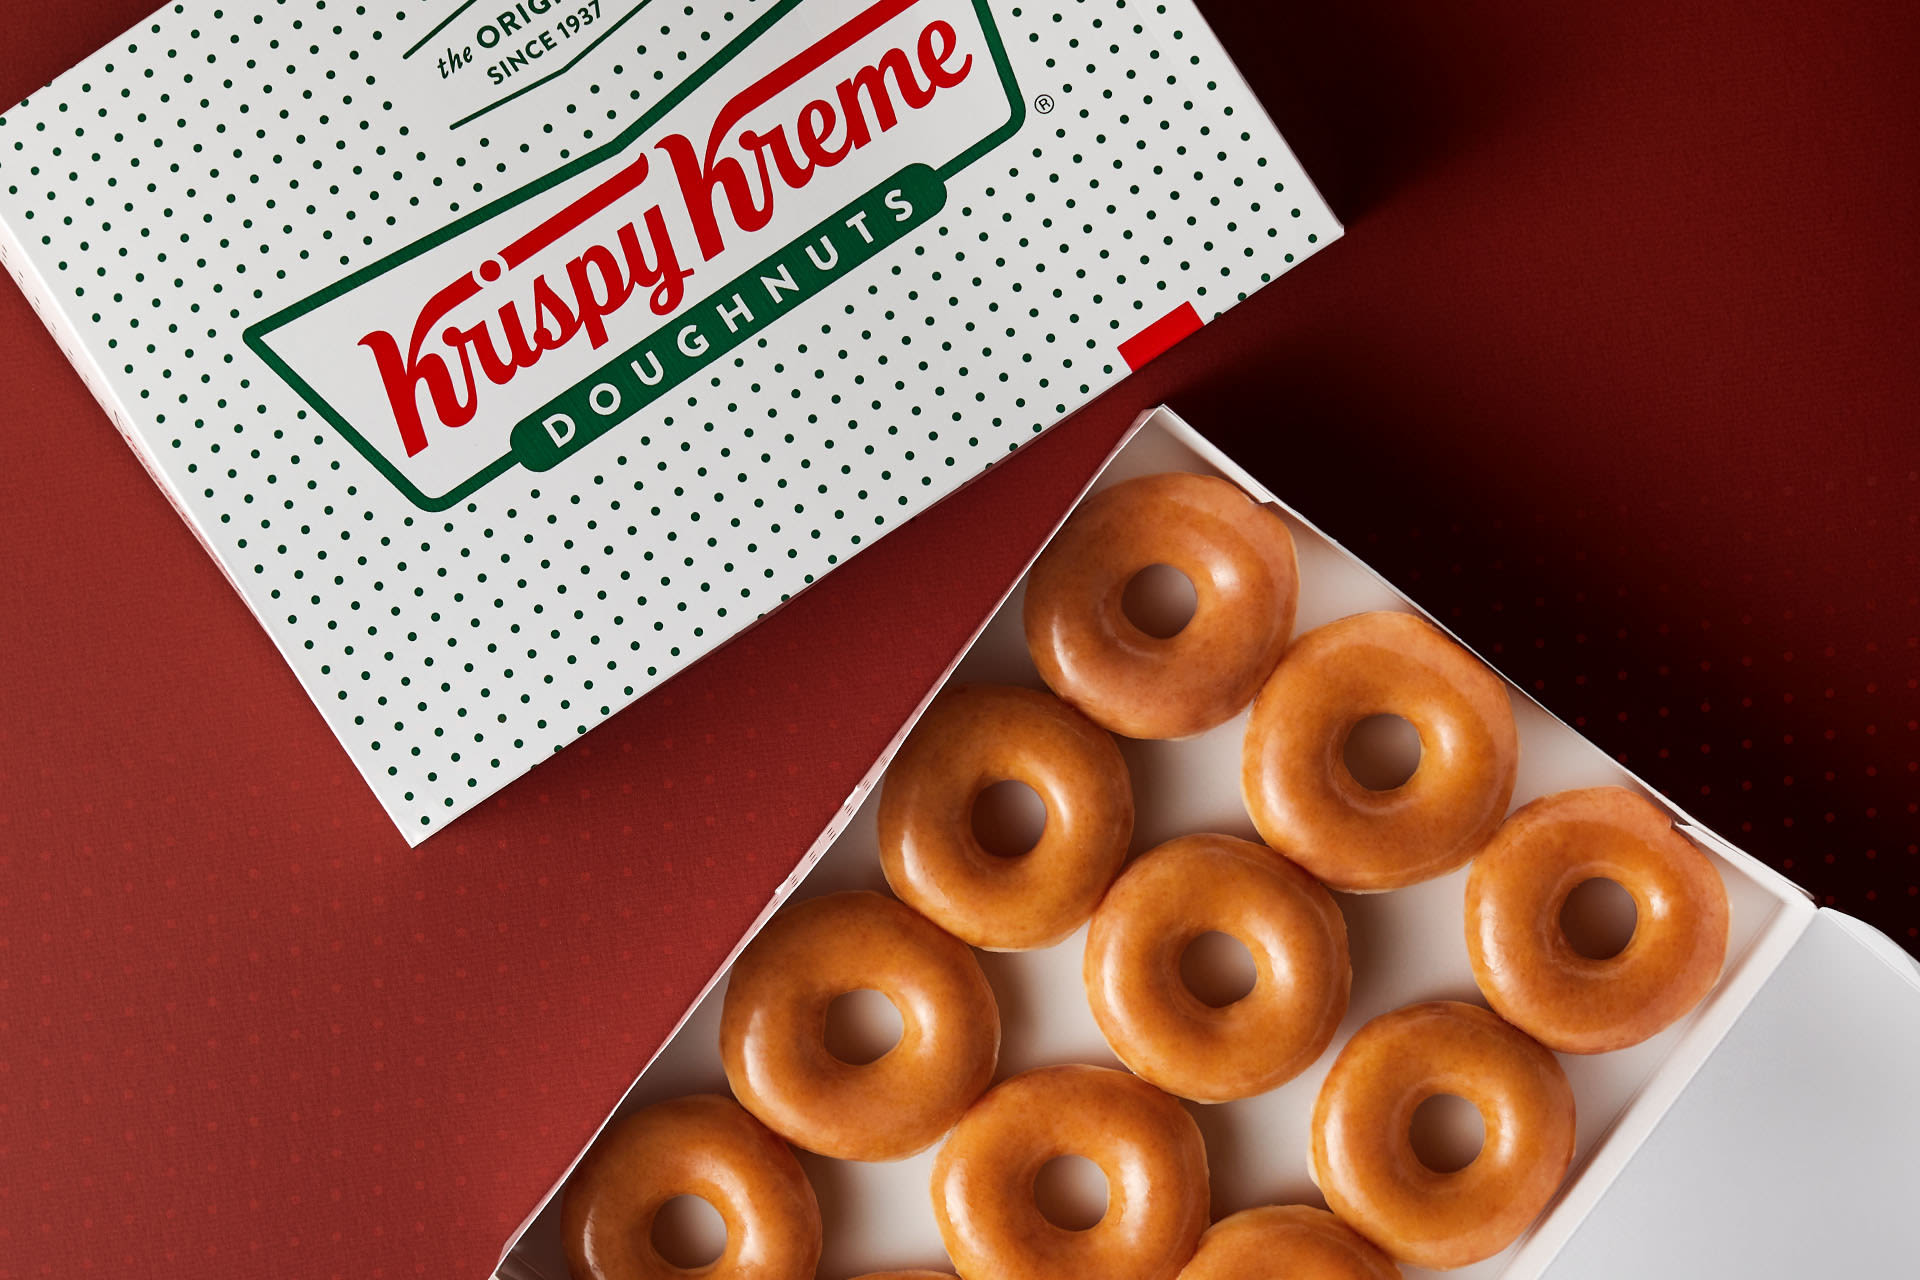 Krispy Kreme to exchange children's books for doughnuts